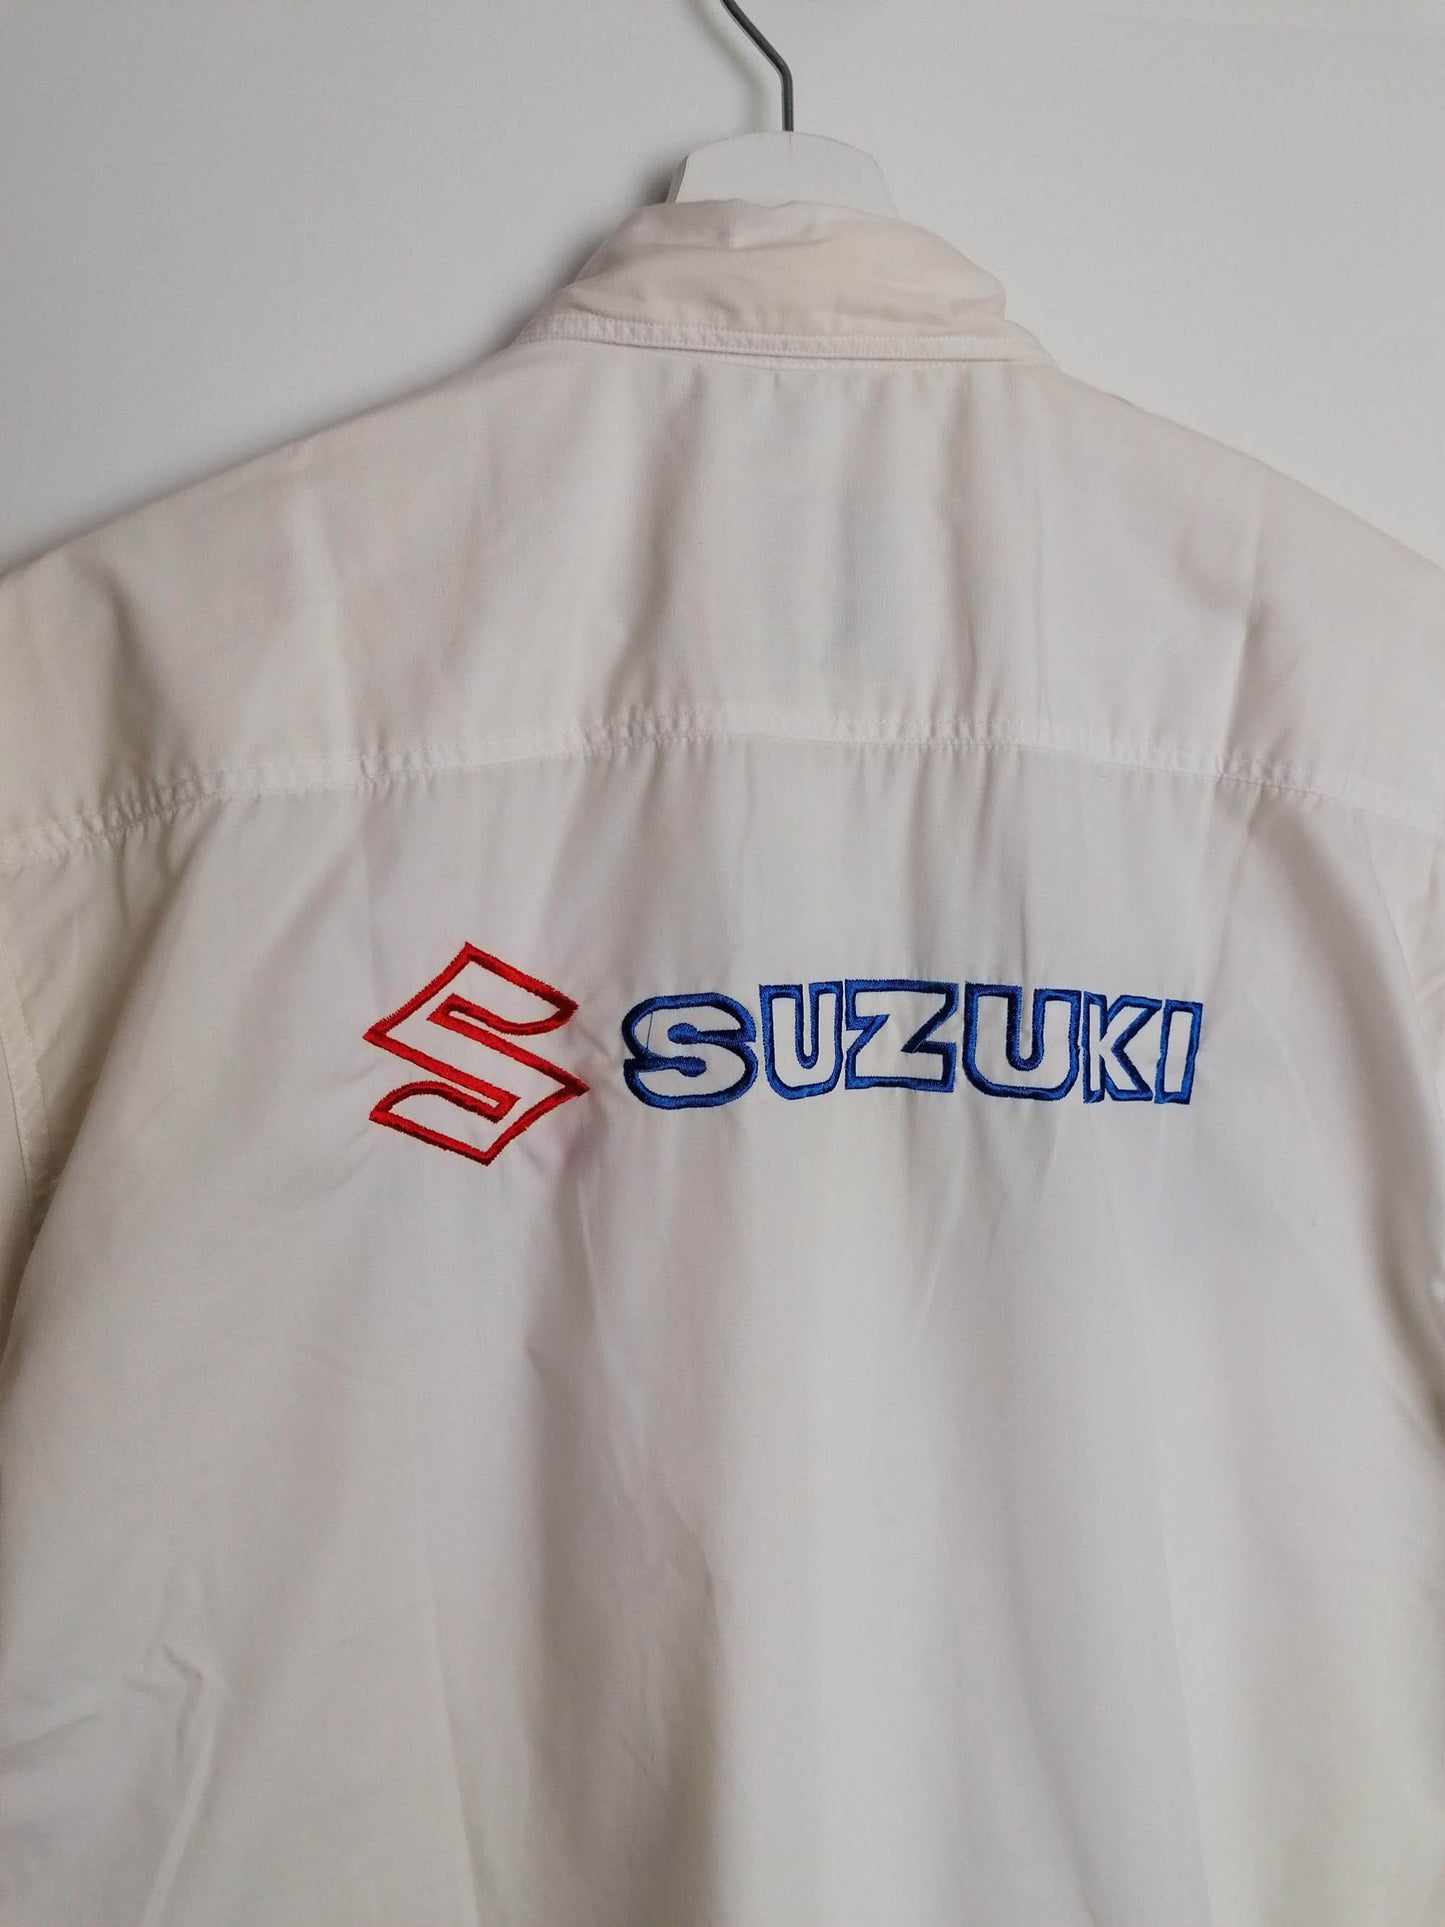 SUZUKI Team Short Sleeve White Shirt - size M-L